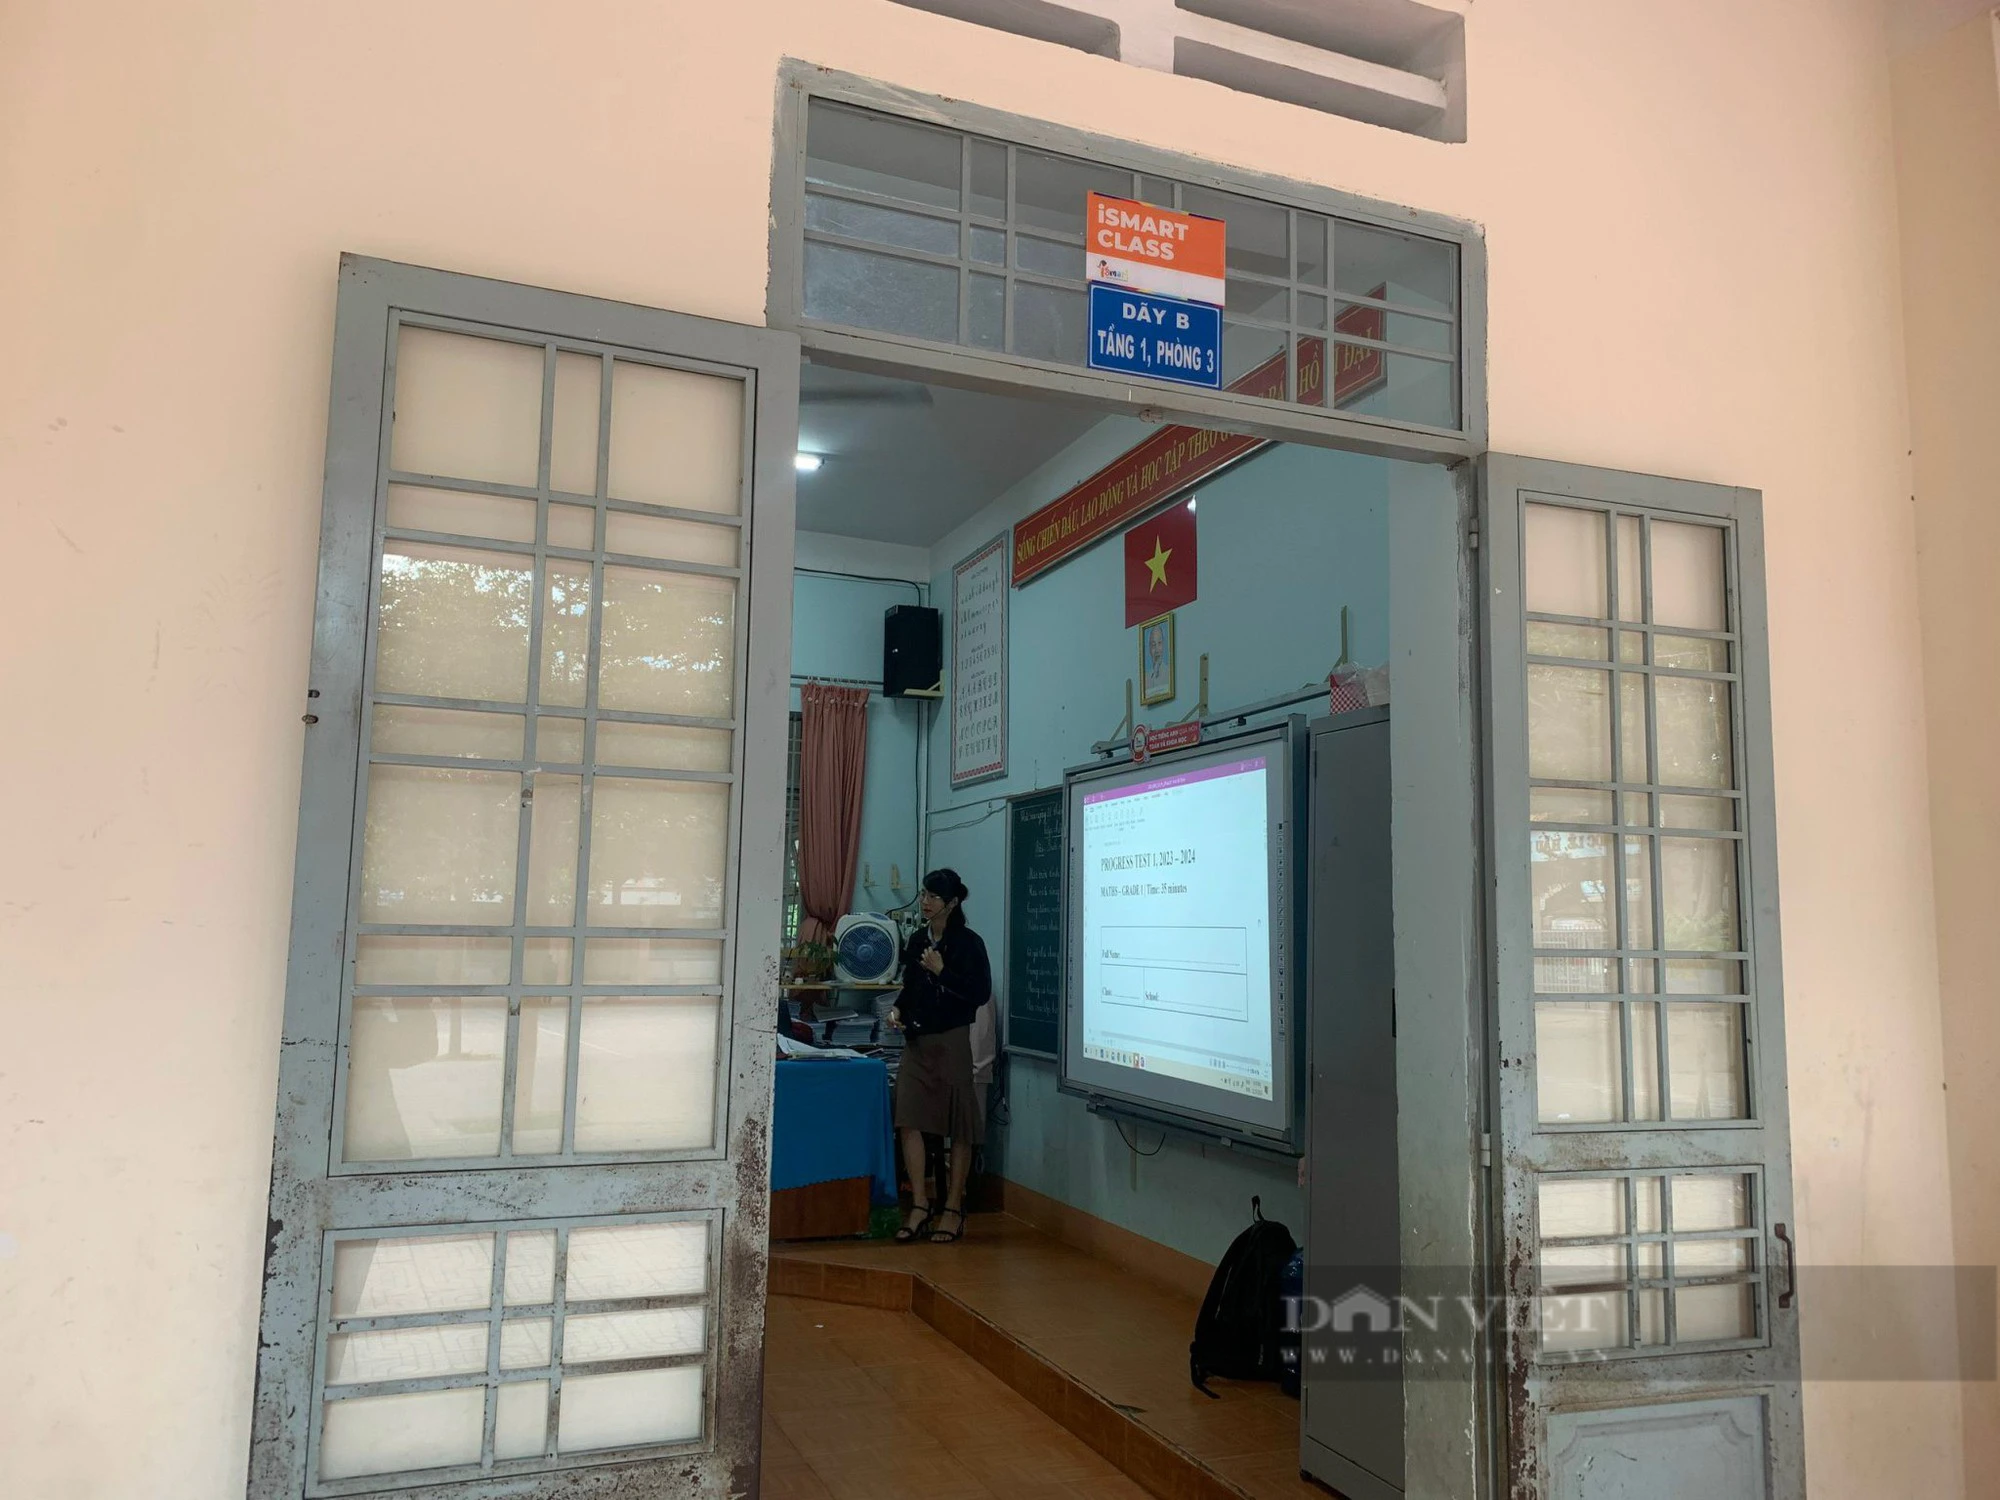 Liên kết đào tạo iSMART ở Đắk Lắk: Lãnh đạo ngành giáo dục nói “học phí quá cao”- Ảnh 2.